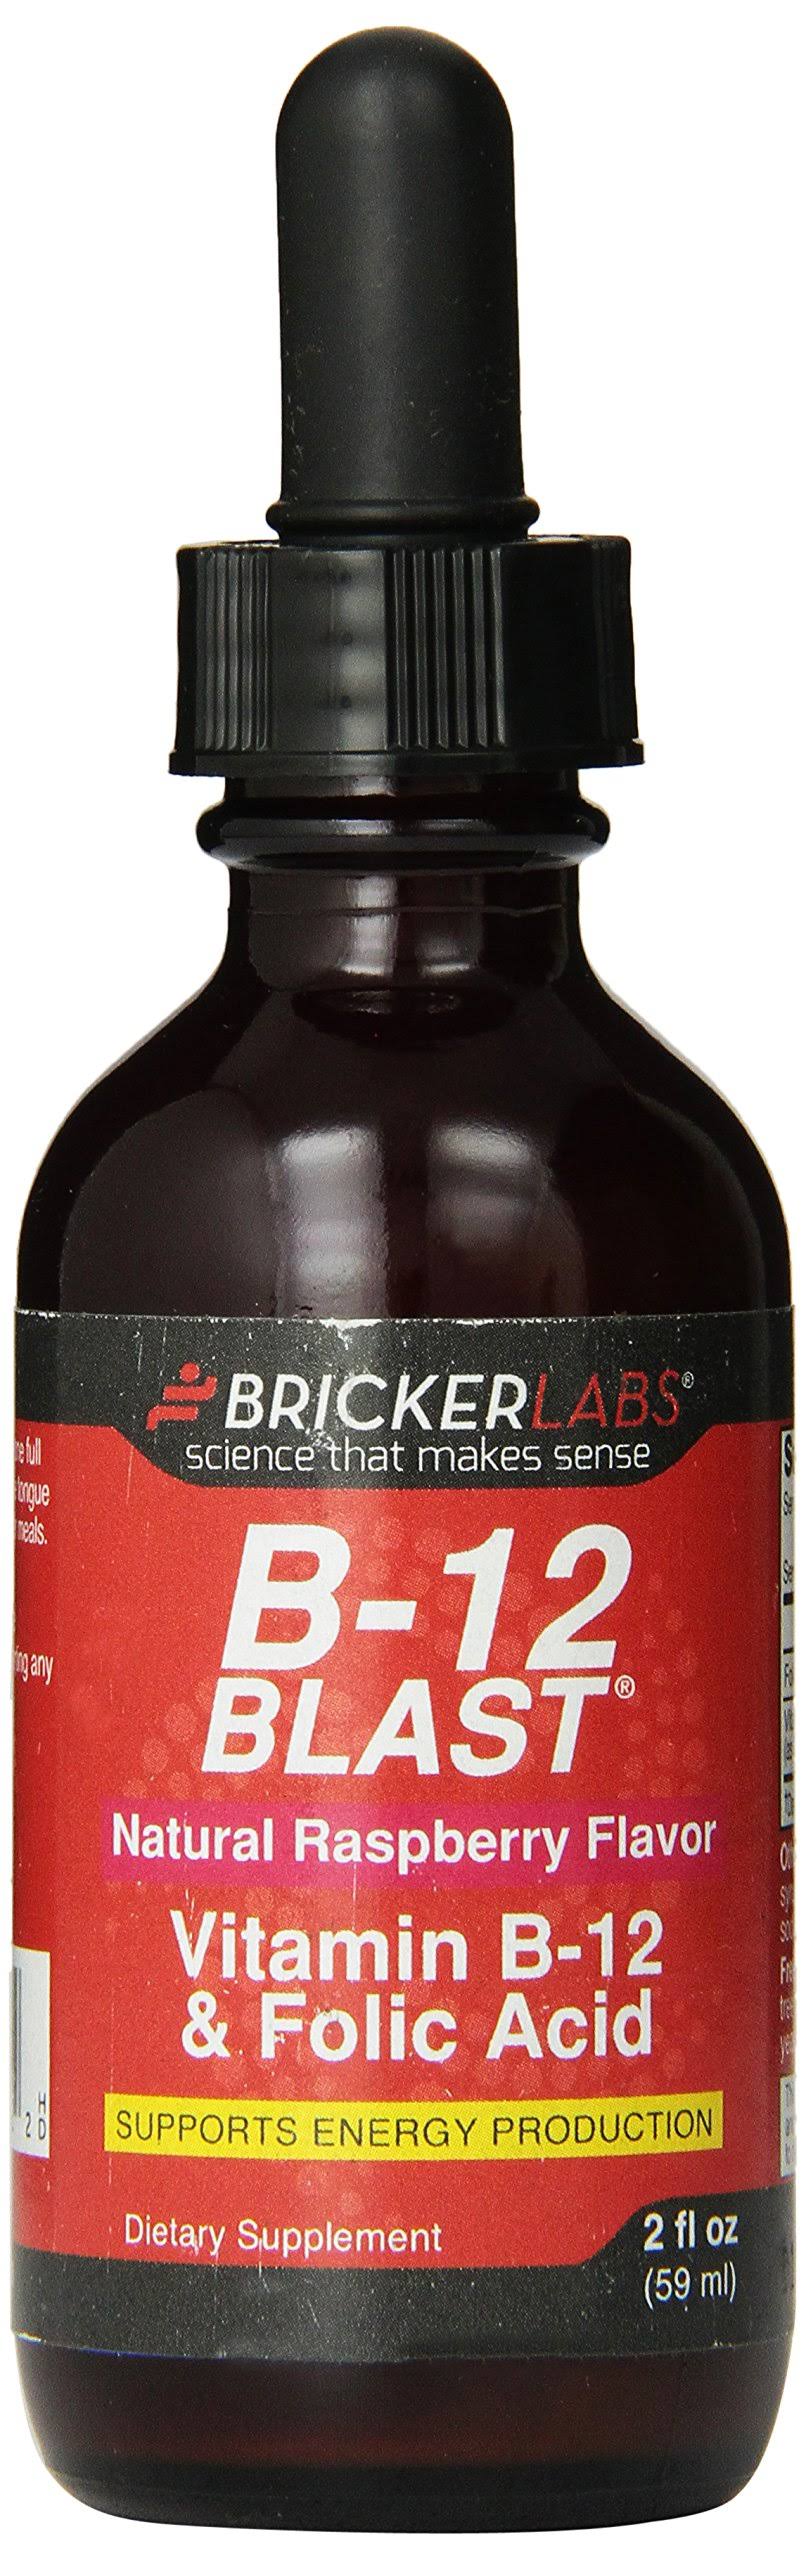 Bricker Labs B12 Blast Vitamin B12 and Folic Acid Supplement - Raspberry, 2oz